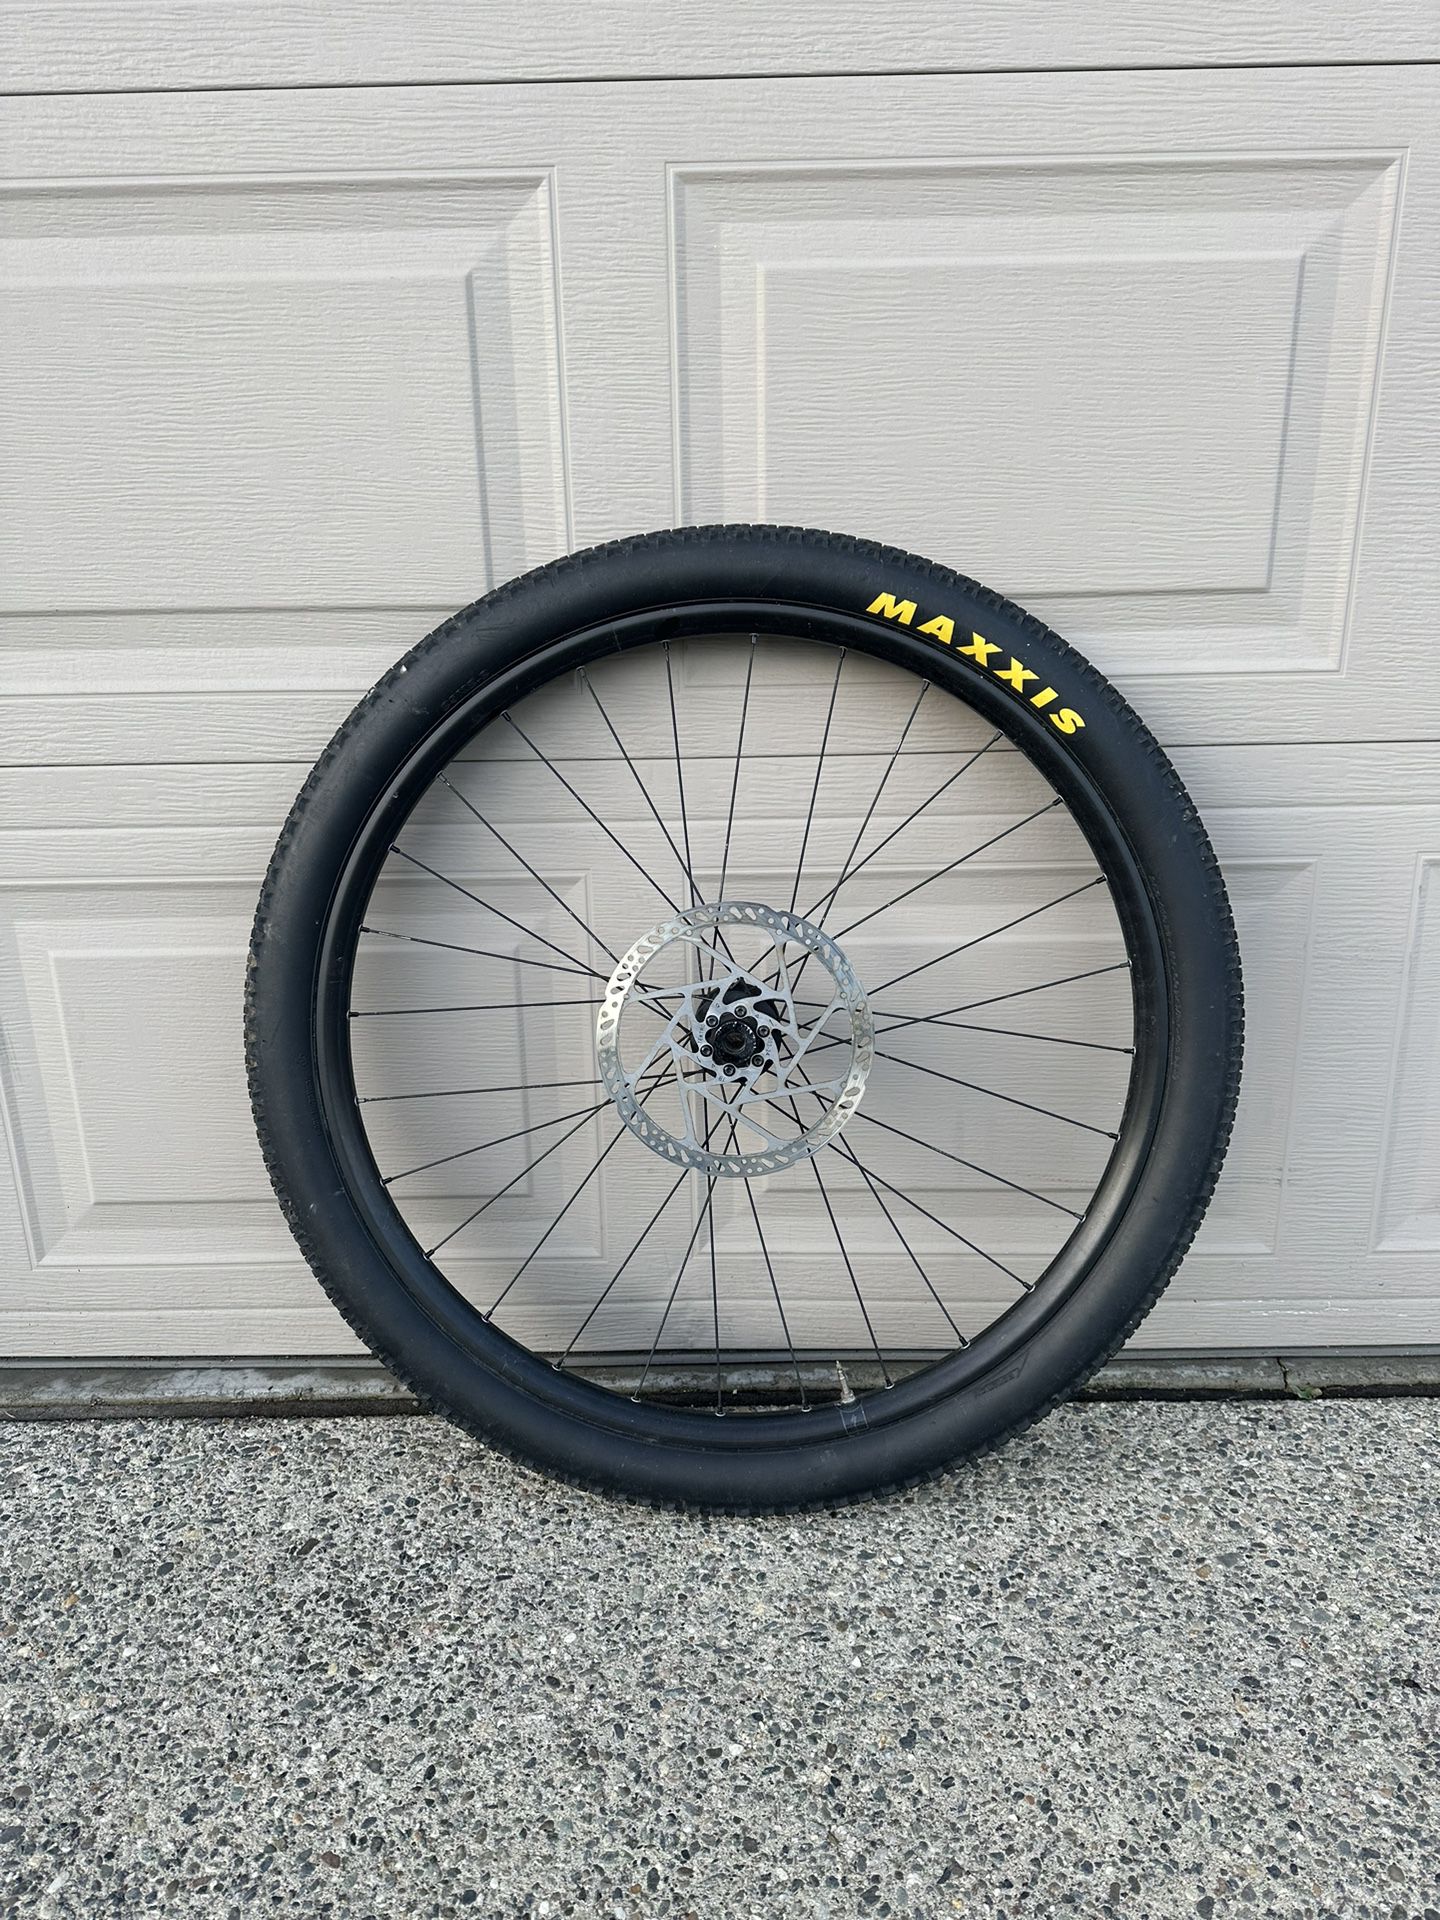 Mountain Bike Wheel or rim 29in